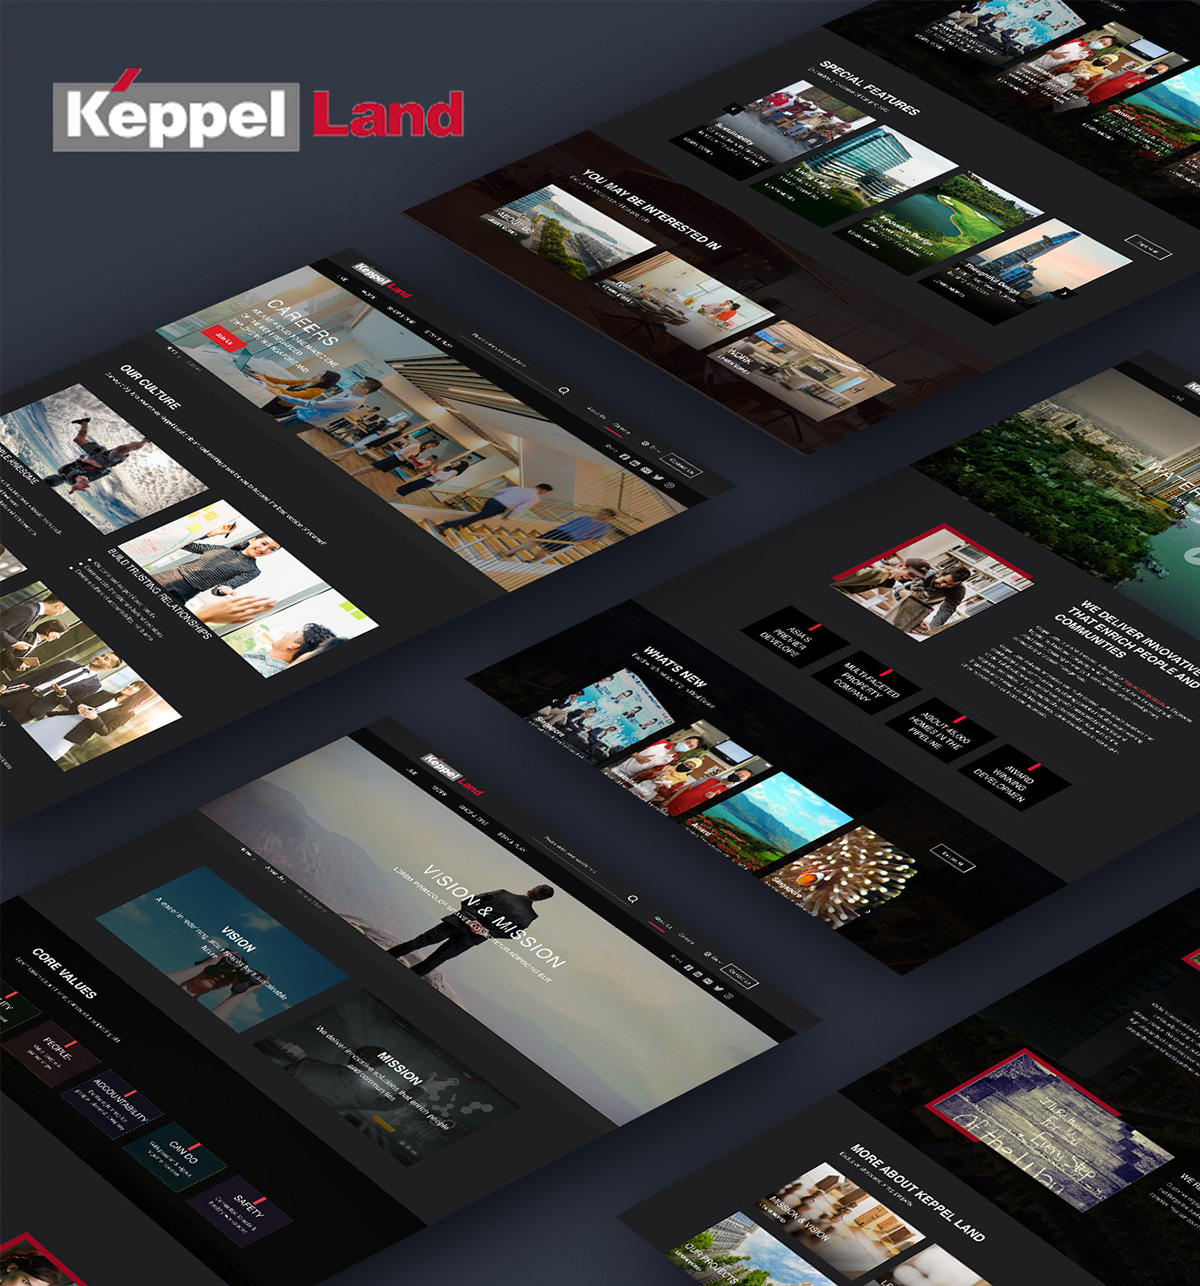 Keppel Land Official Website